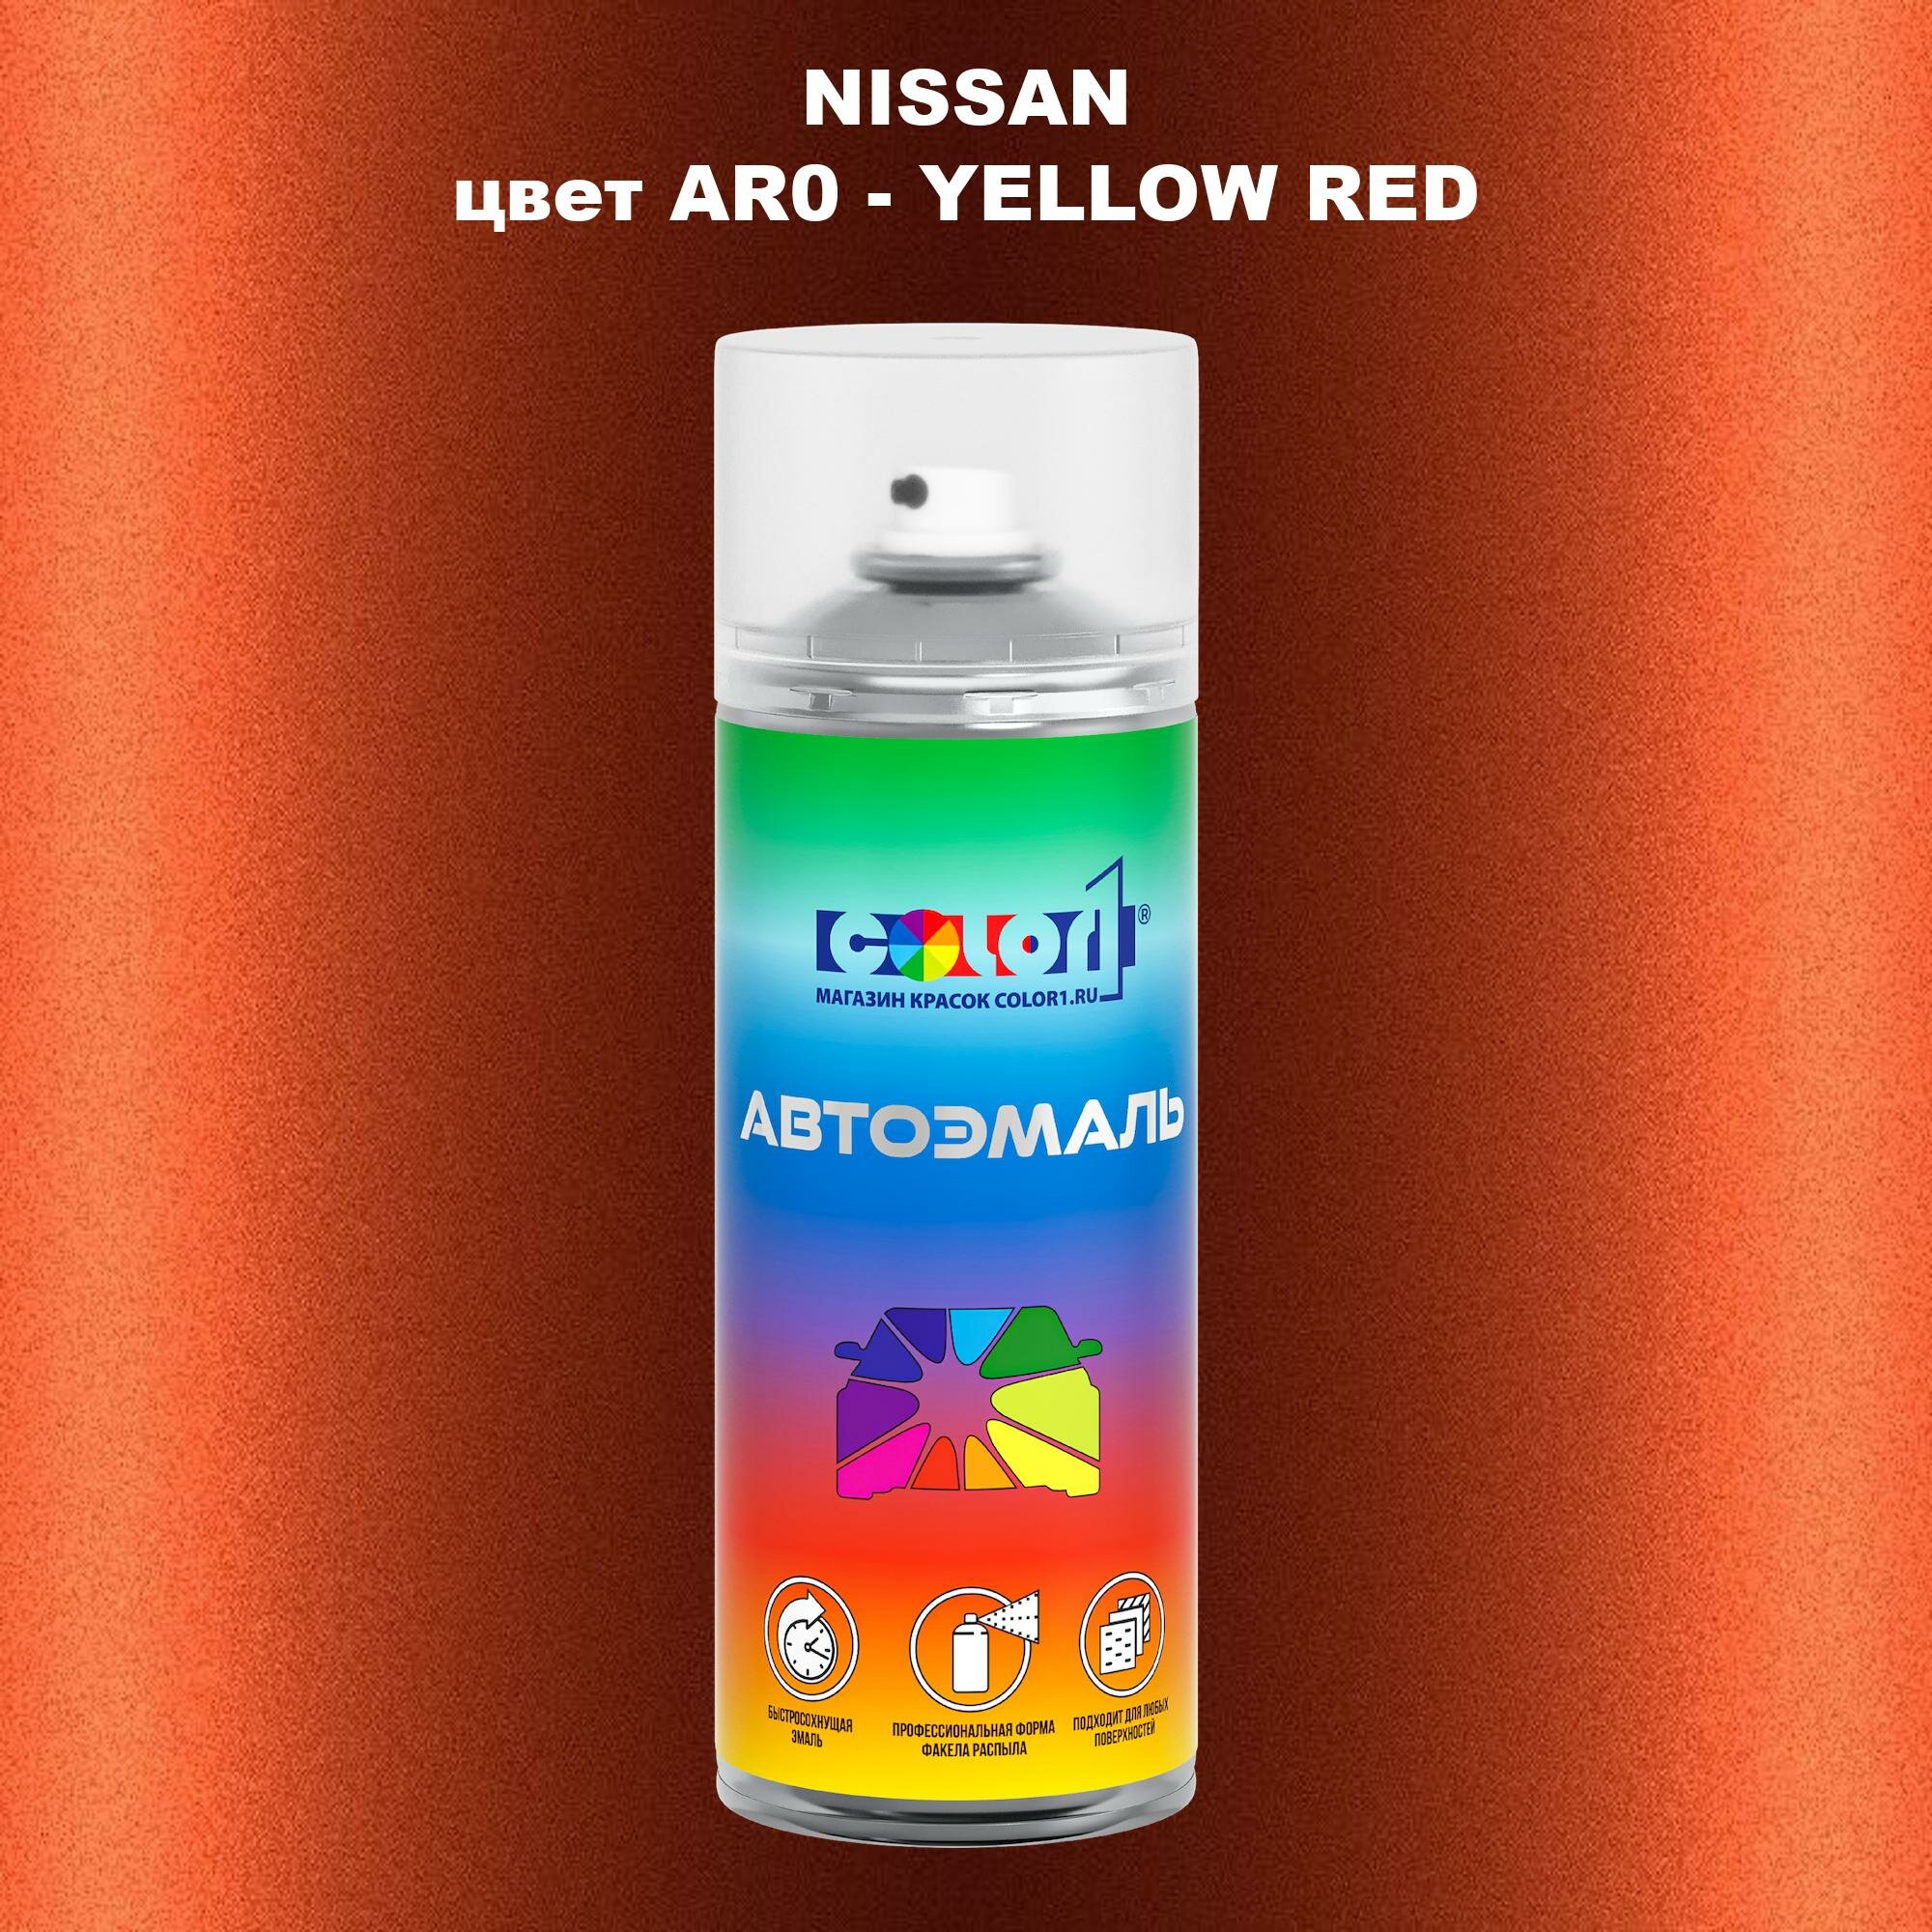 Аэрозольная краска COLOR1 для NISSAN, цвет AR0 - YELLOW RED